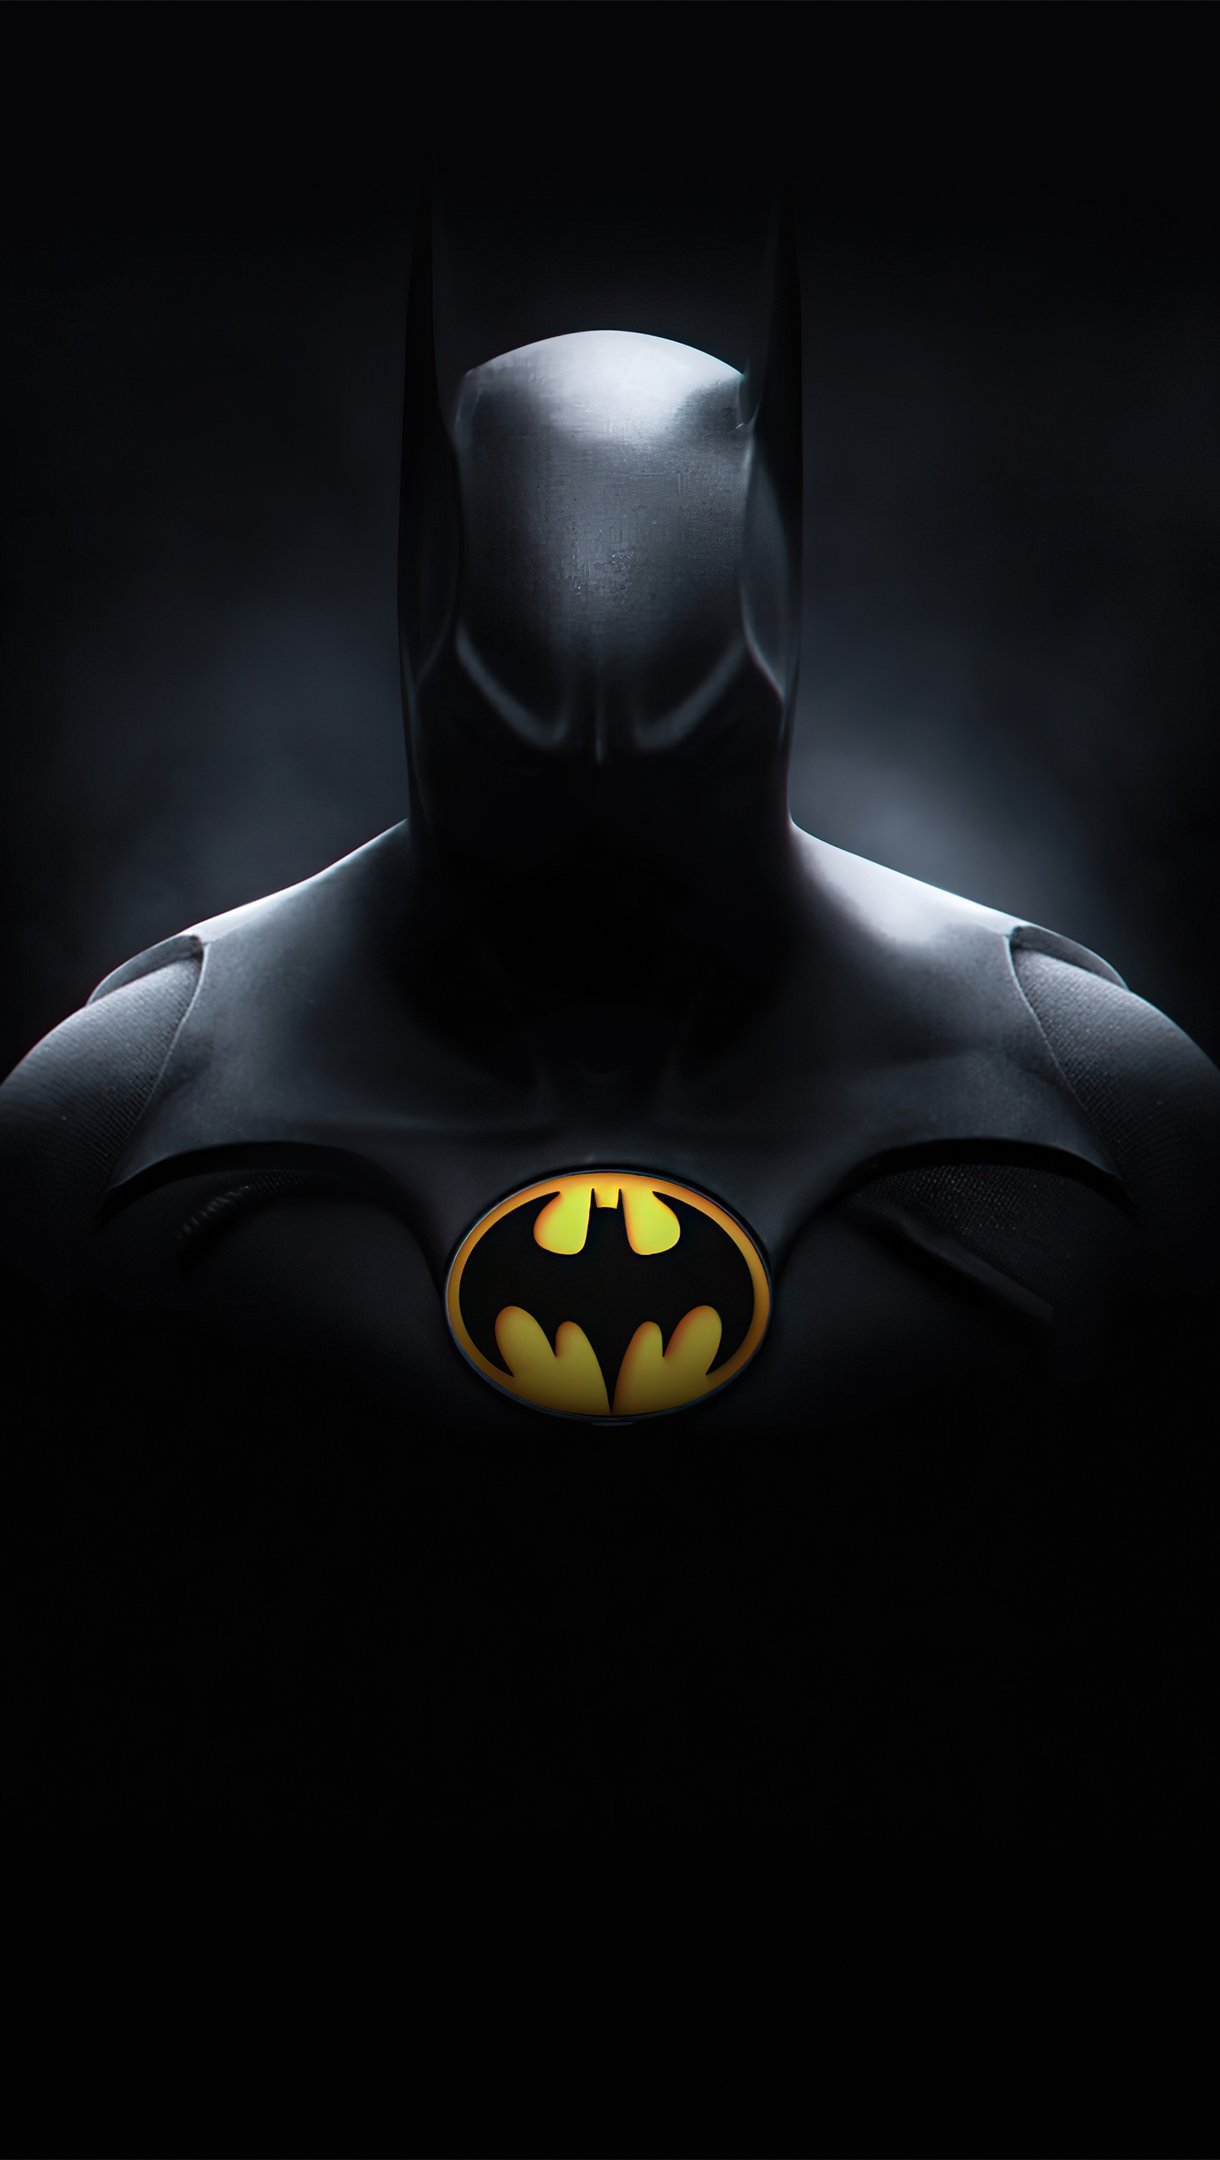 Batman's suit Wallpaper 4k Ultra HD ID:5743